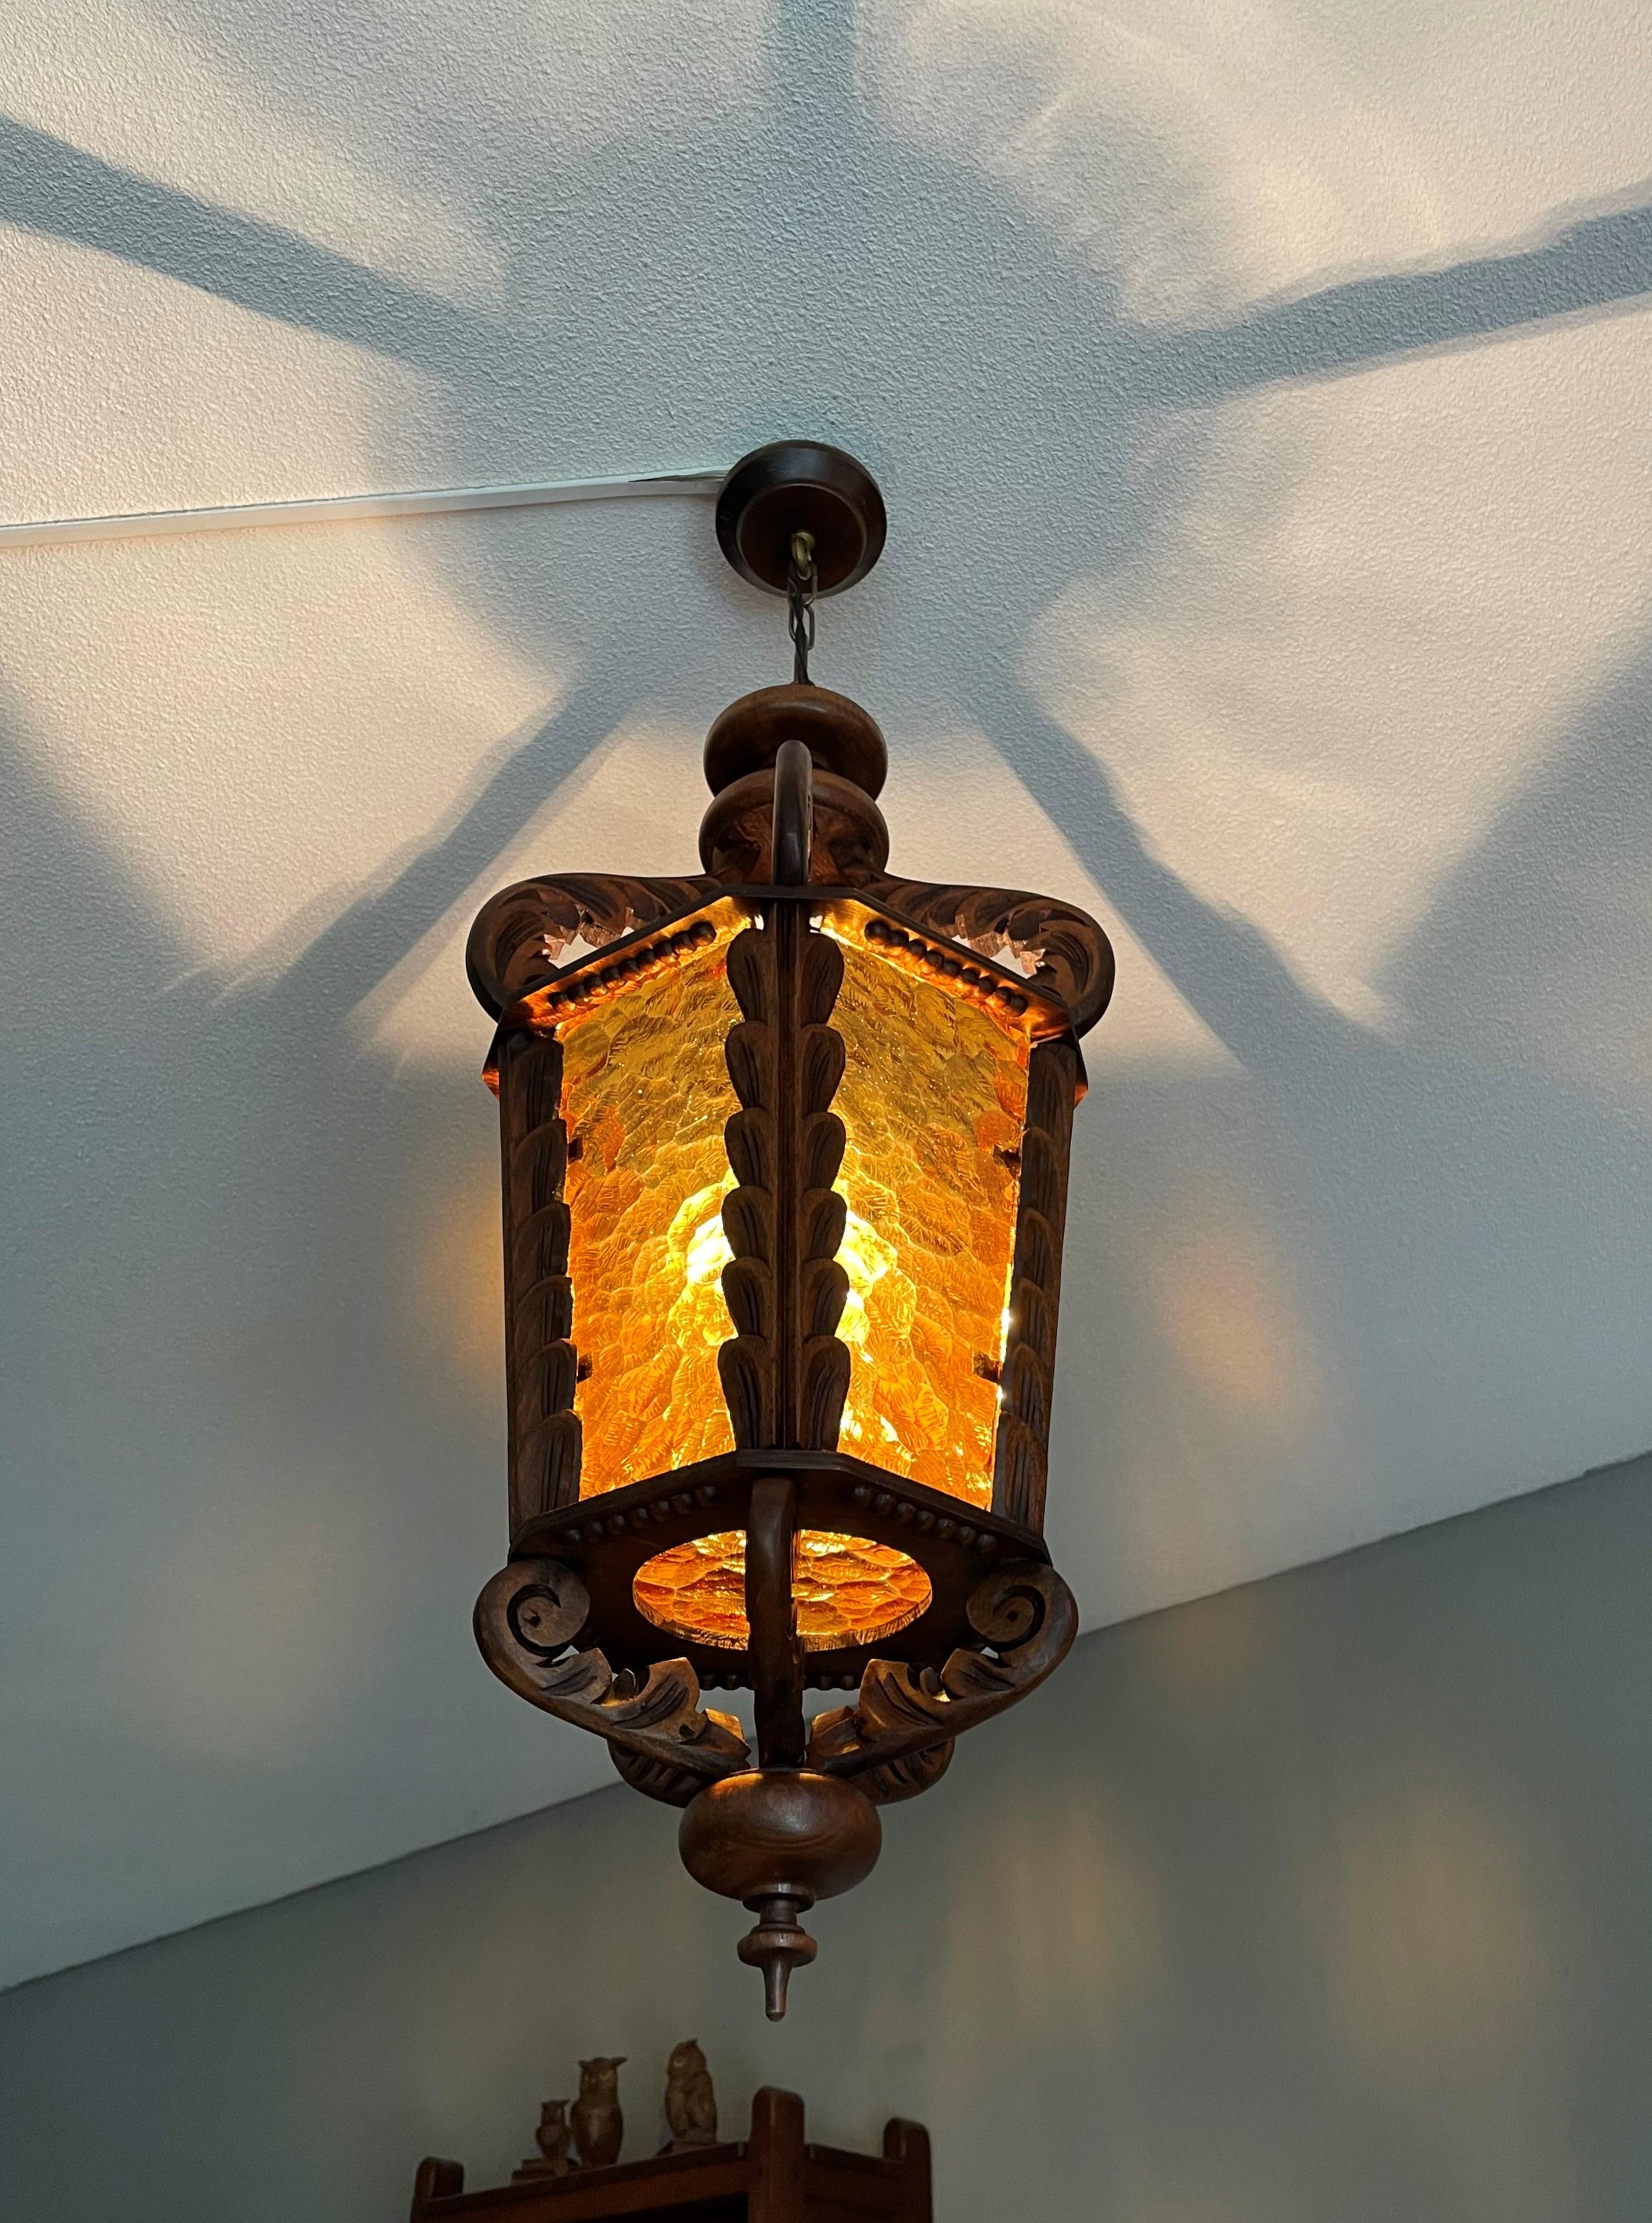 Superbe luminaire de couloir entièrement fabriqué à la main.

Cette superbe lanterne vintage est une autre de nos trouvailles récentes et elle est en superbe état. Nous l'avons recâblé pour qu'il puisse être utilisé immédiatement et en toute